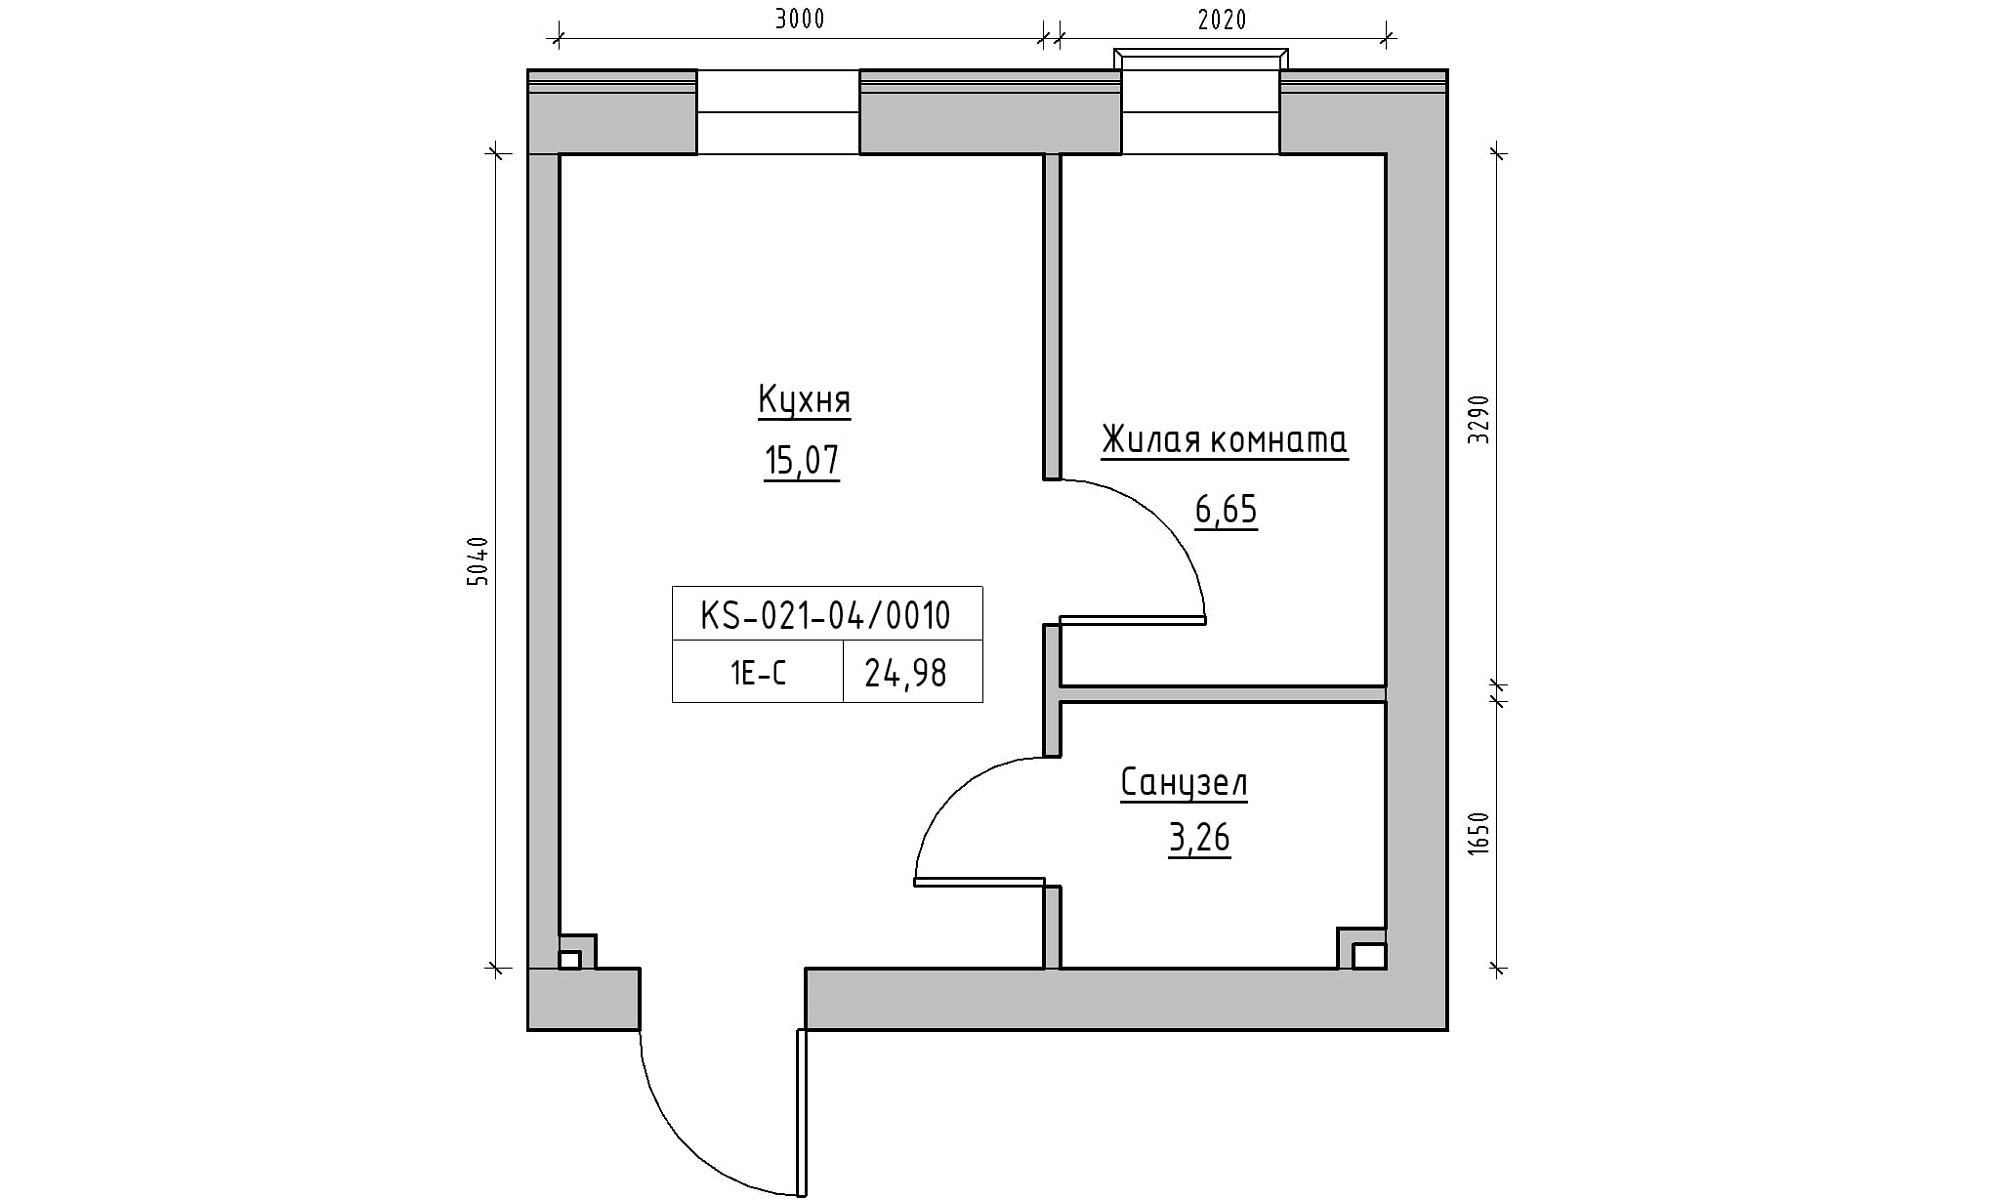 Планування 1-к квартира площею 24.98м2, KS-021-04/0010.